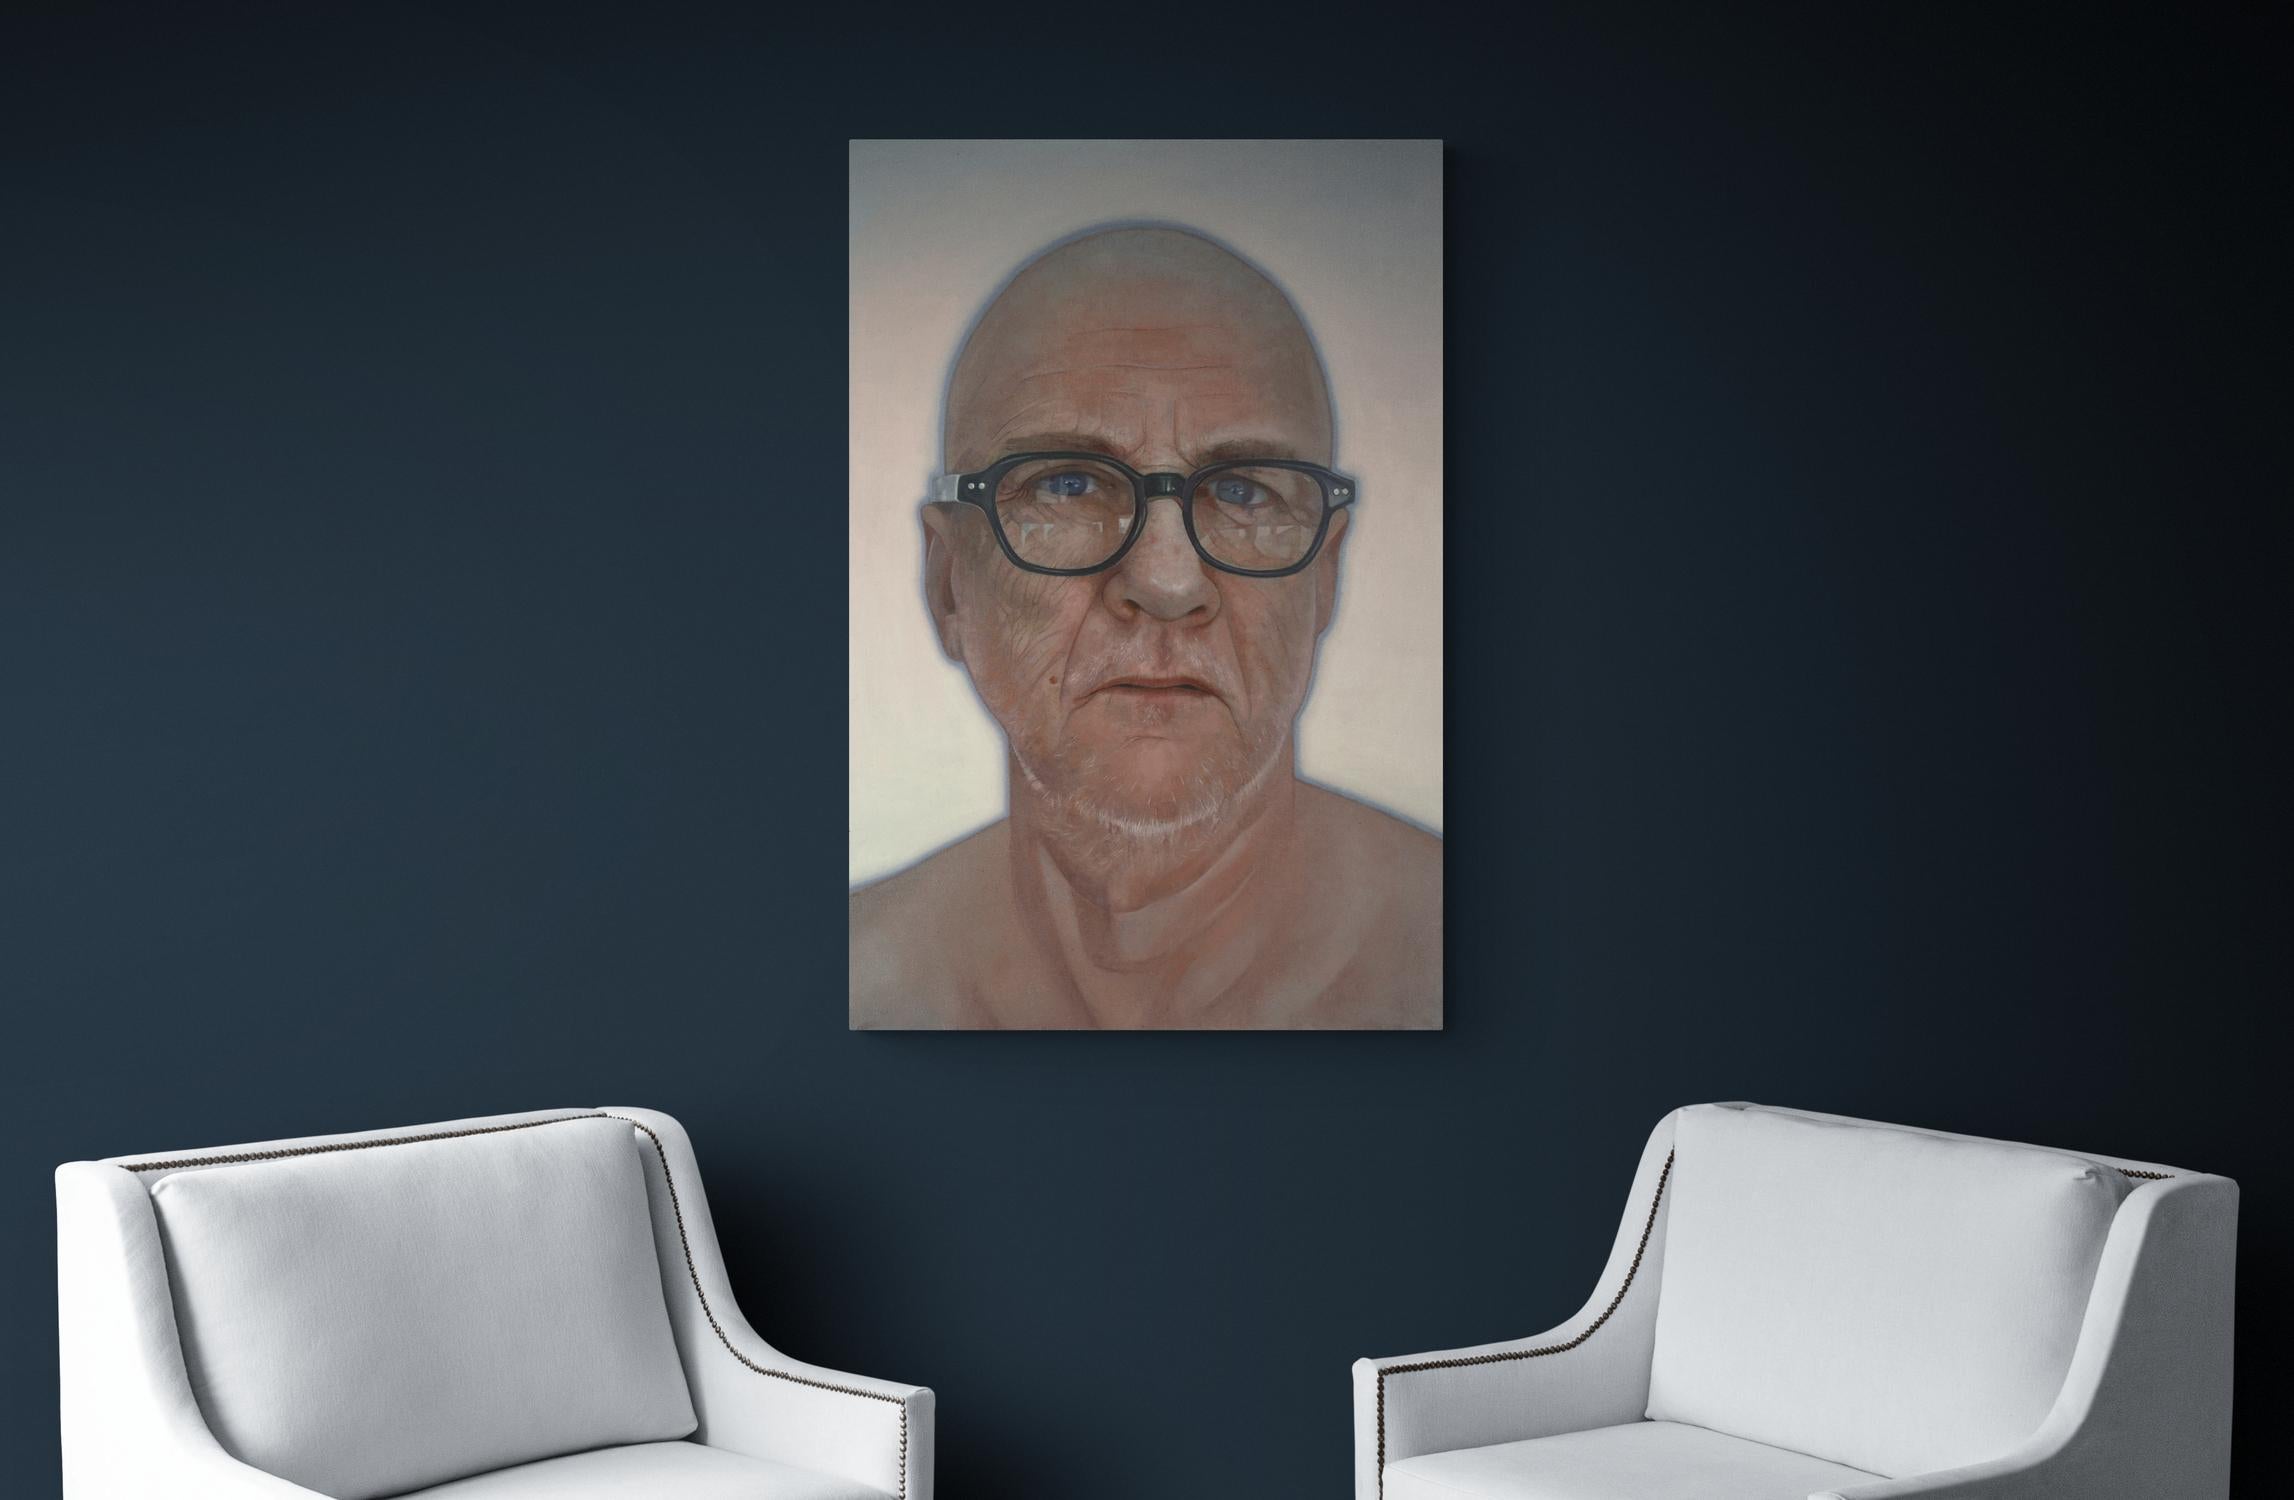 Cette image super réaliste d'un homme âgé, la tête légèrement inclinée alors qu'il regarde sobrement à travers des lentilles réfléchissantes, est un portrait psychologique poignant de Dan Hughes. Un halo bleu octane souligne le modèle, dont la peau,